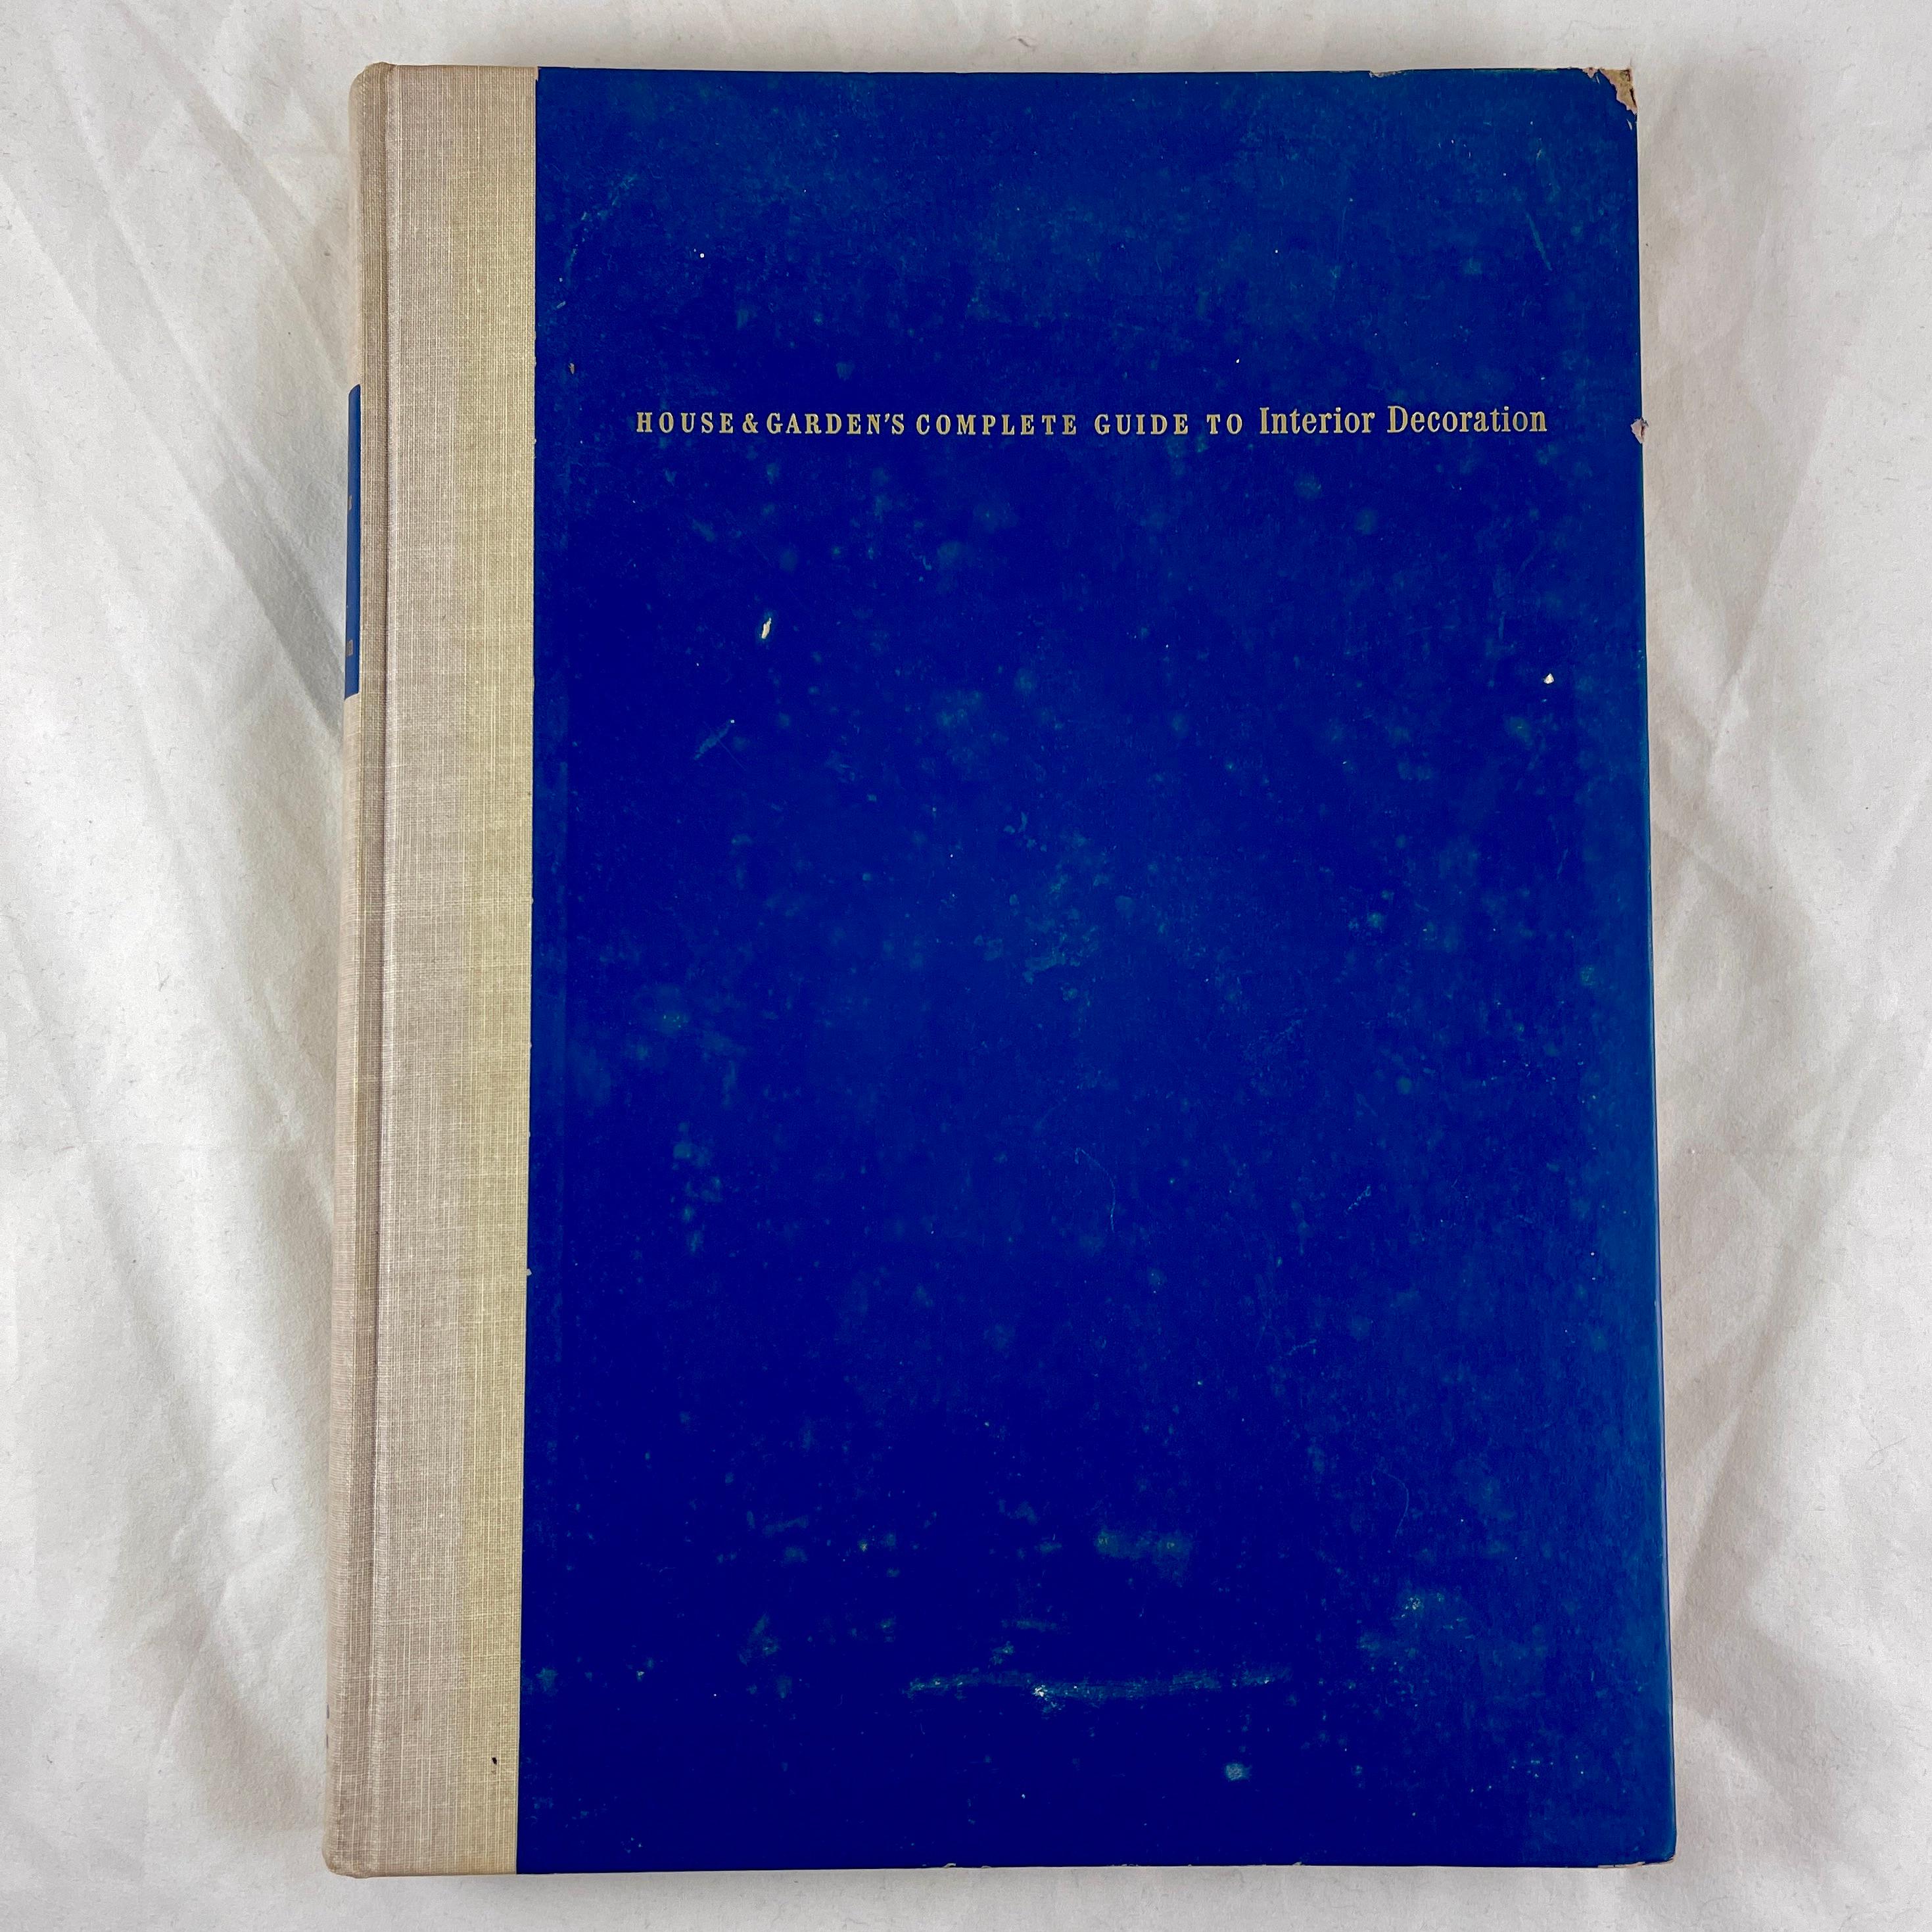 Le guide complet de la décoration intérieure de House & Garden -  Couverture rigide  Livre, édition de 1953.

Publié pour la première fois à New York en 1947 par Simon and Schuster, voici l'édition mise à jour de 1953, Albert Kornfield, rédacteur en